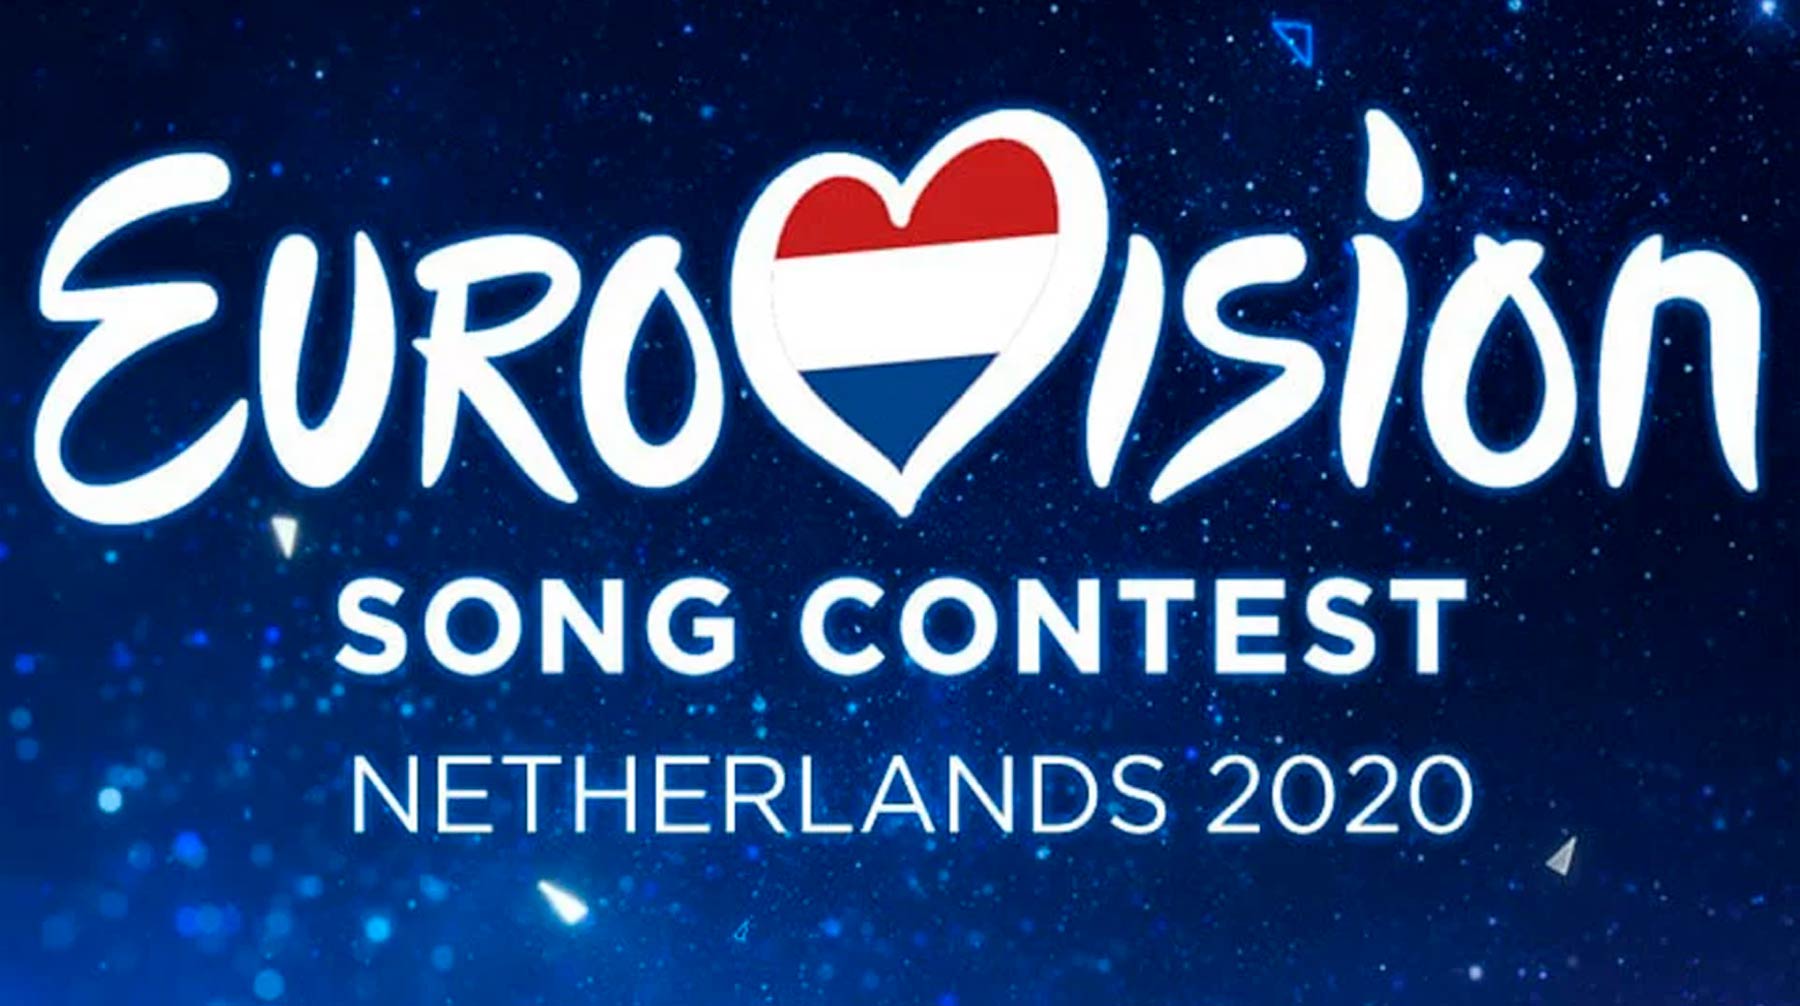 Мероприятие переносится на неопределенный срок из-за эпидемии коронавируса Фото: © eurovision.tv